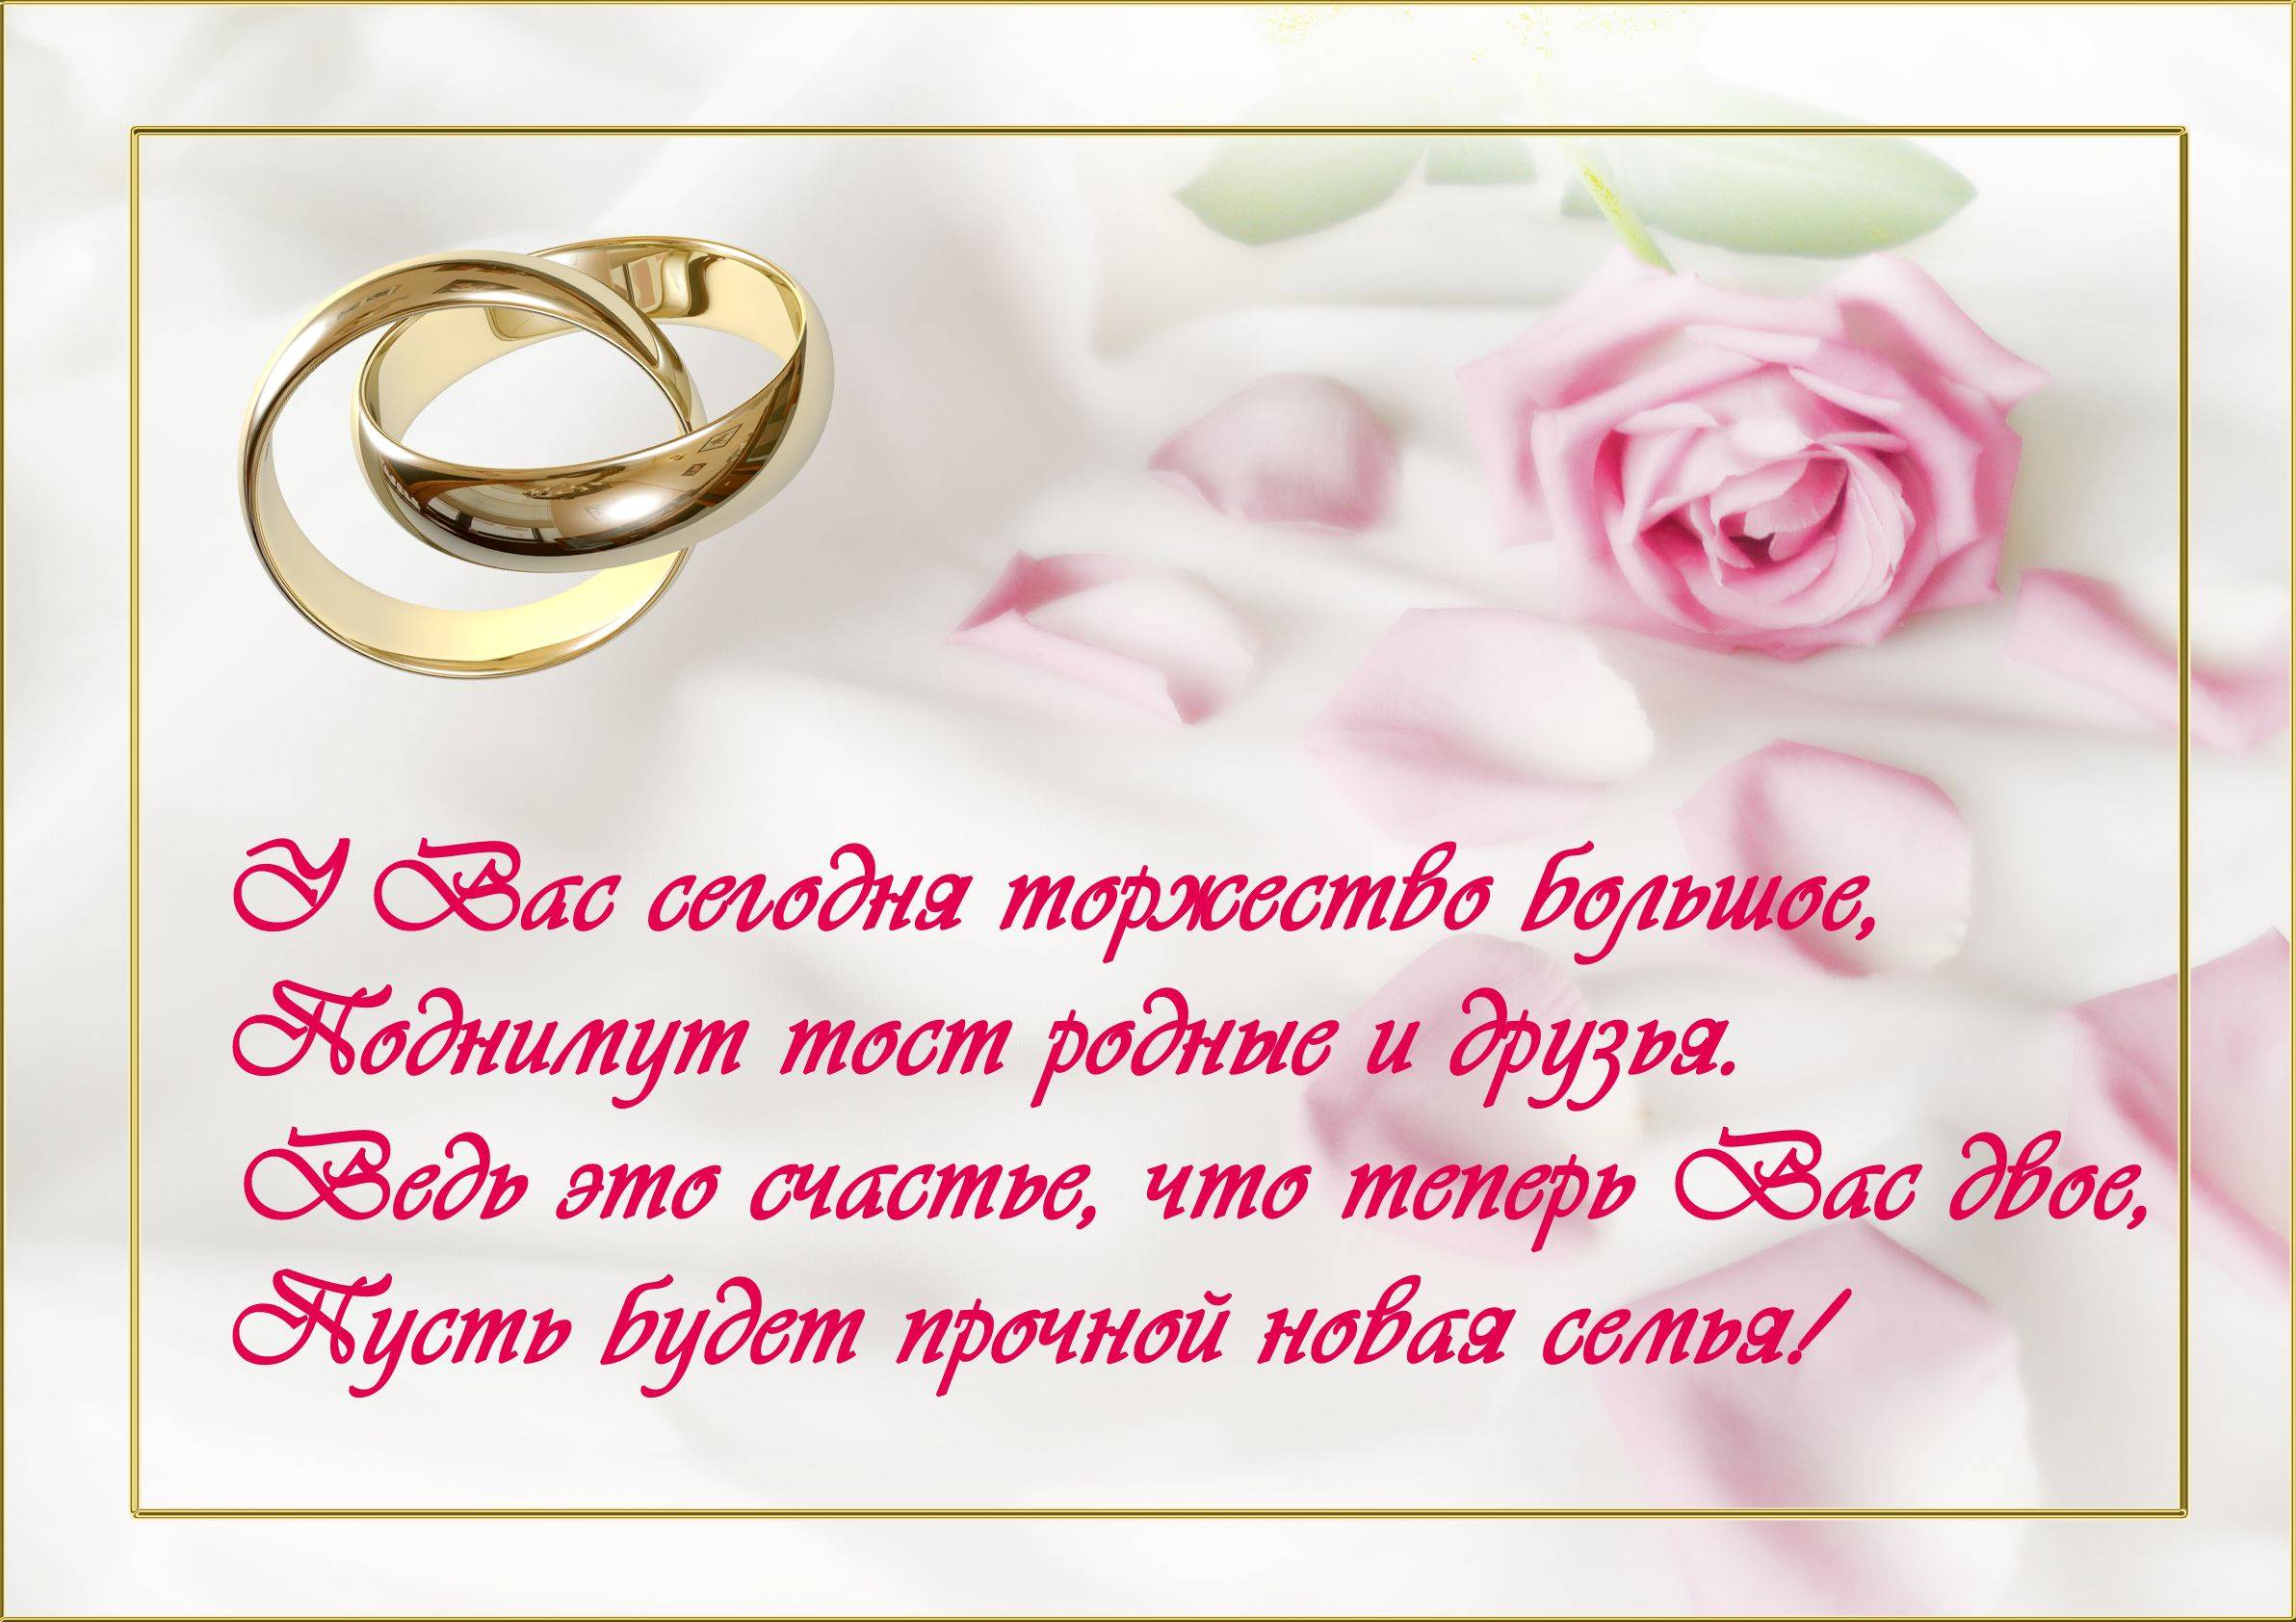 Оригинальные  поздравления на свадьбу (в стихах) — 25 поздравлений — stost.ru